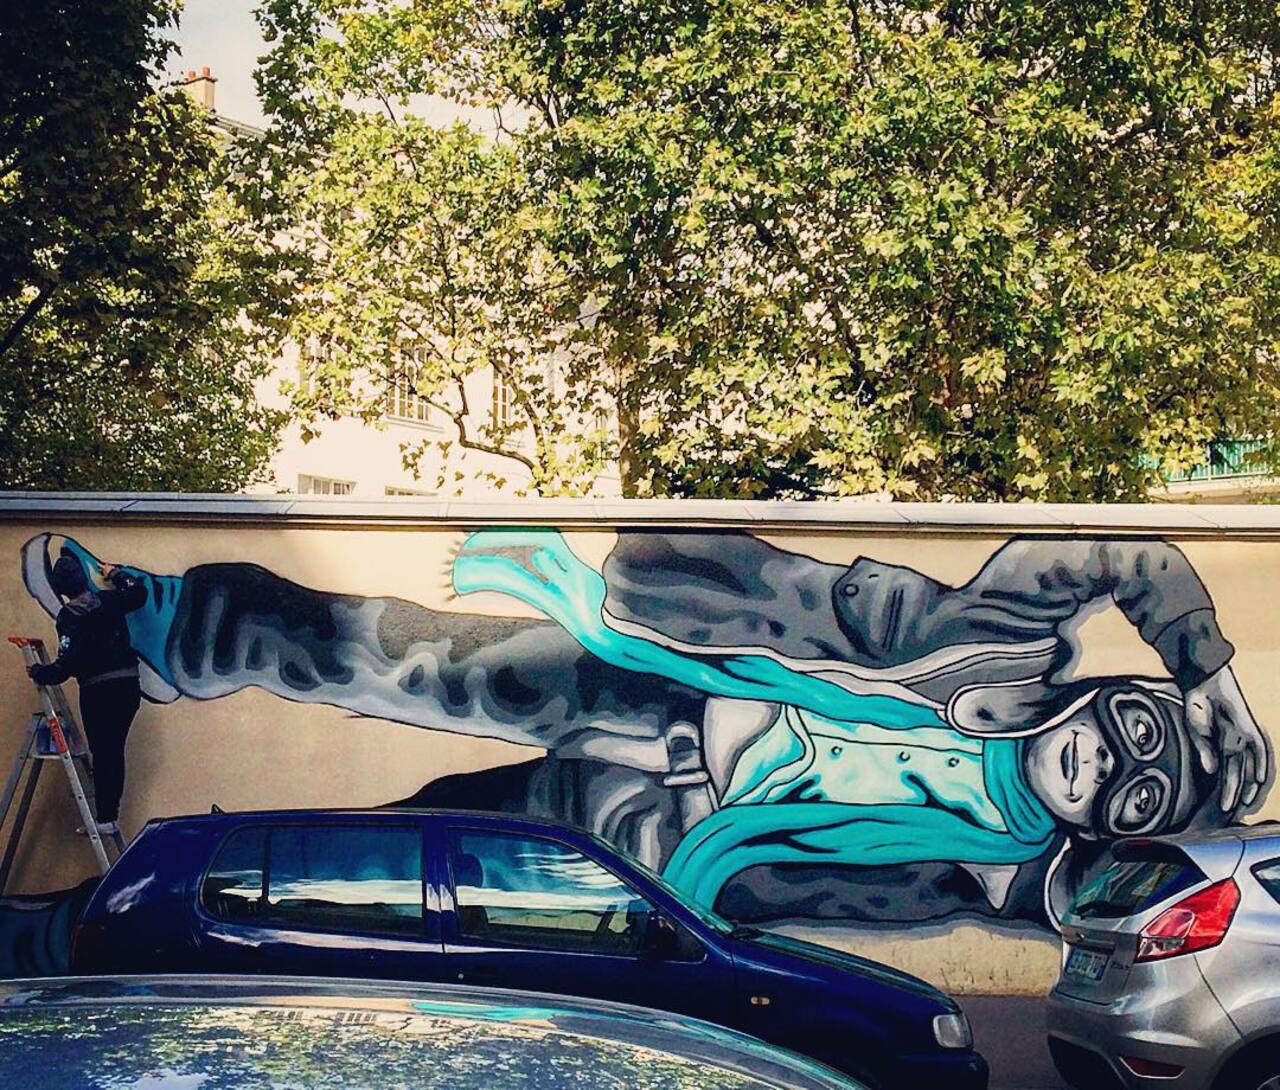 RT @circumjacent_fr: #Paris #graffiti photo by @julosteart http://ift.tt/1LBvZ41 #StreetArt http://t.co/G1kTMWYaUG